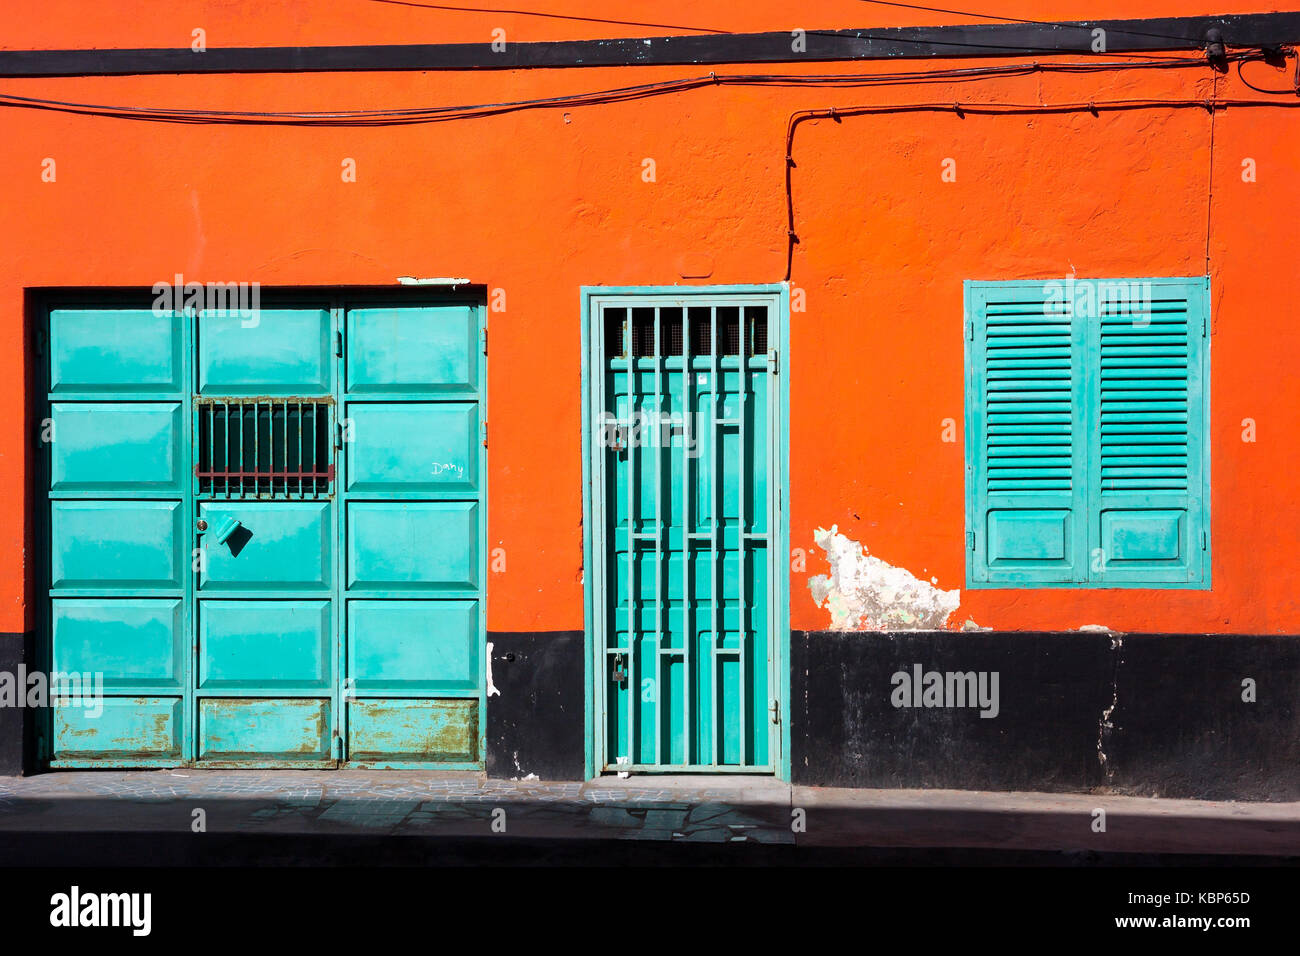 Mur orange cyan, des fenêtres et des portes. architecture colorée Cap vert Banque D'Images